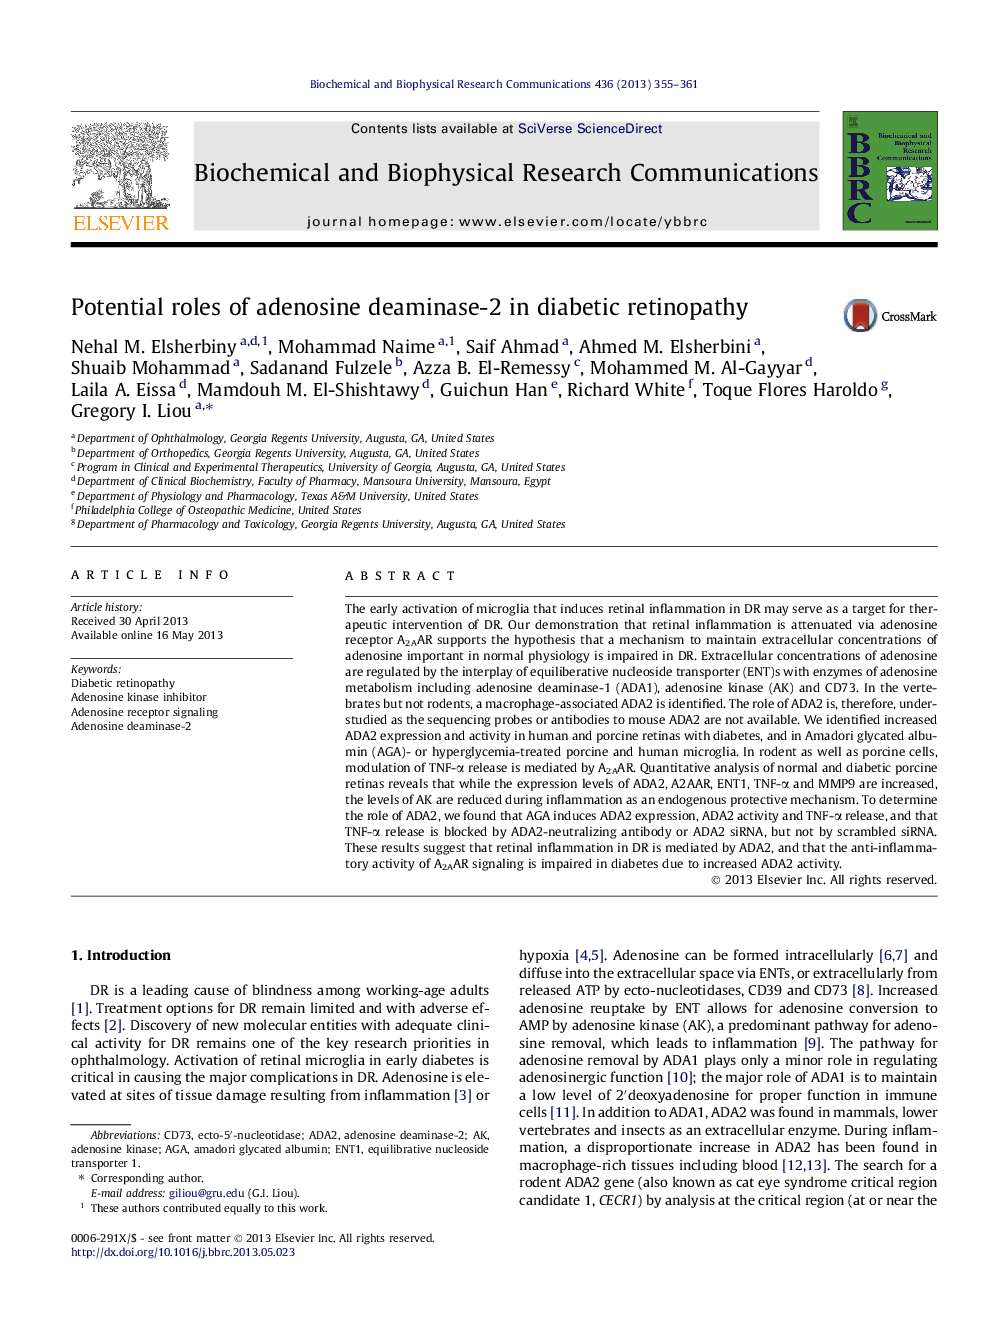 نقشهای بالقوه آدنوزین دیناماز 2 در رتینوپاتی دیابتی 